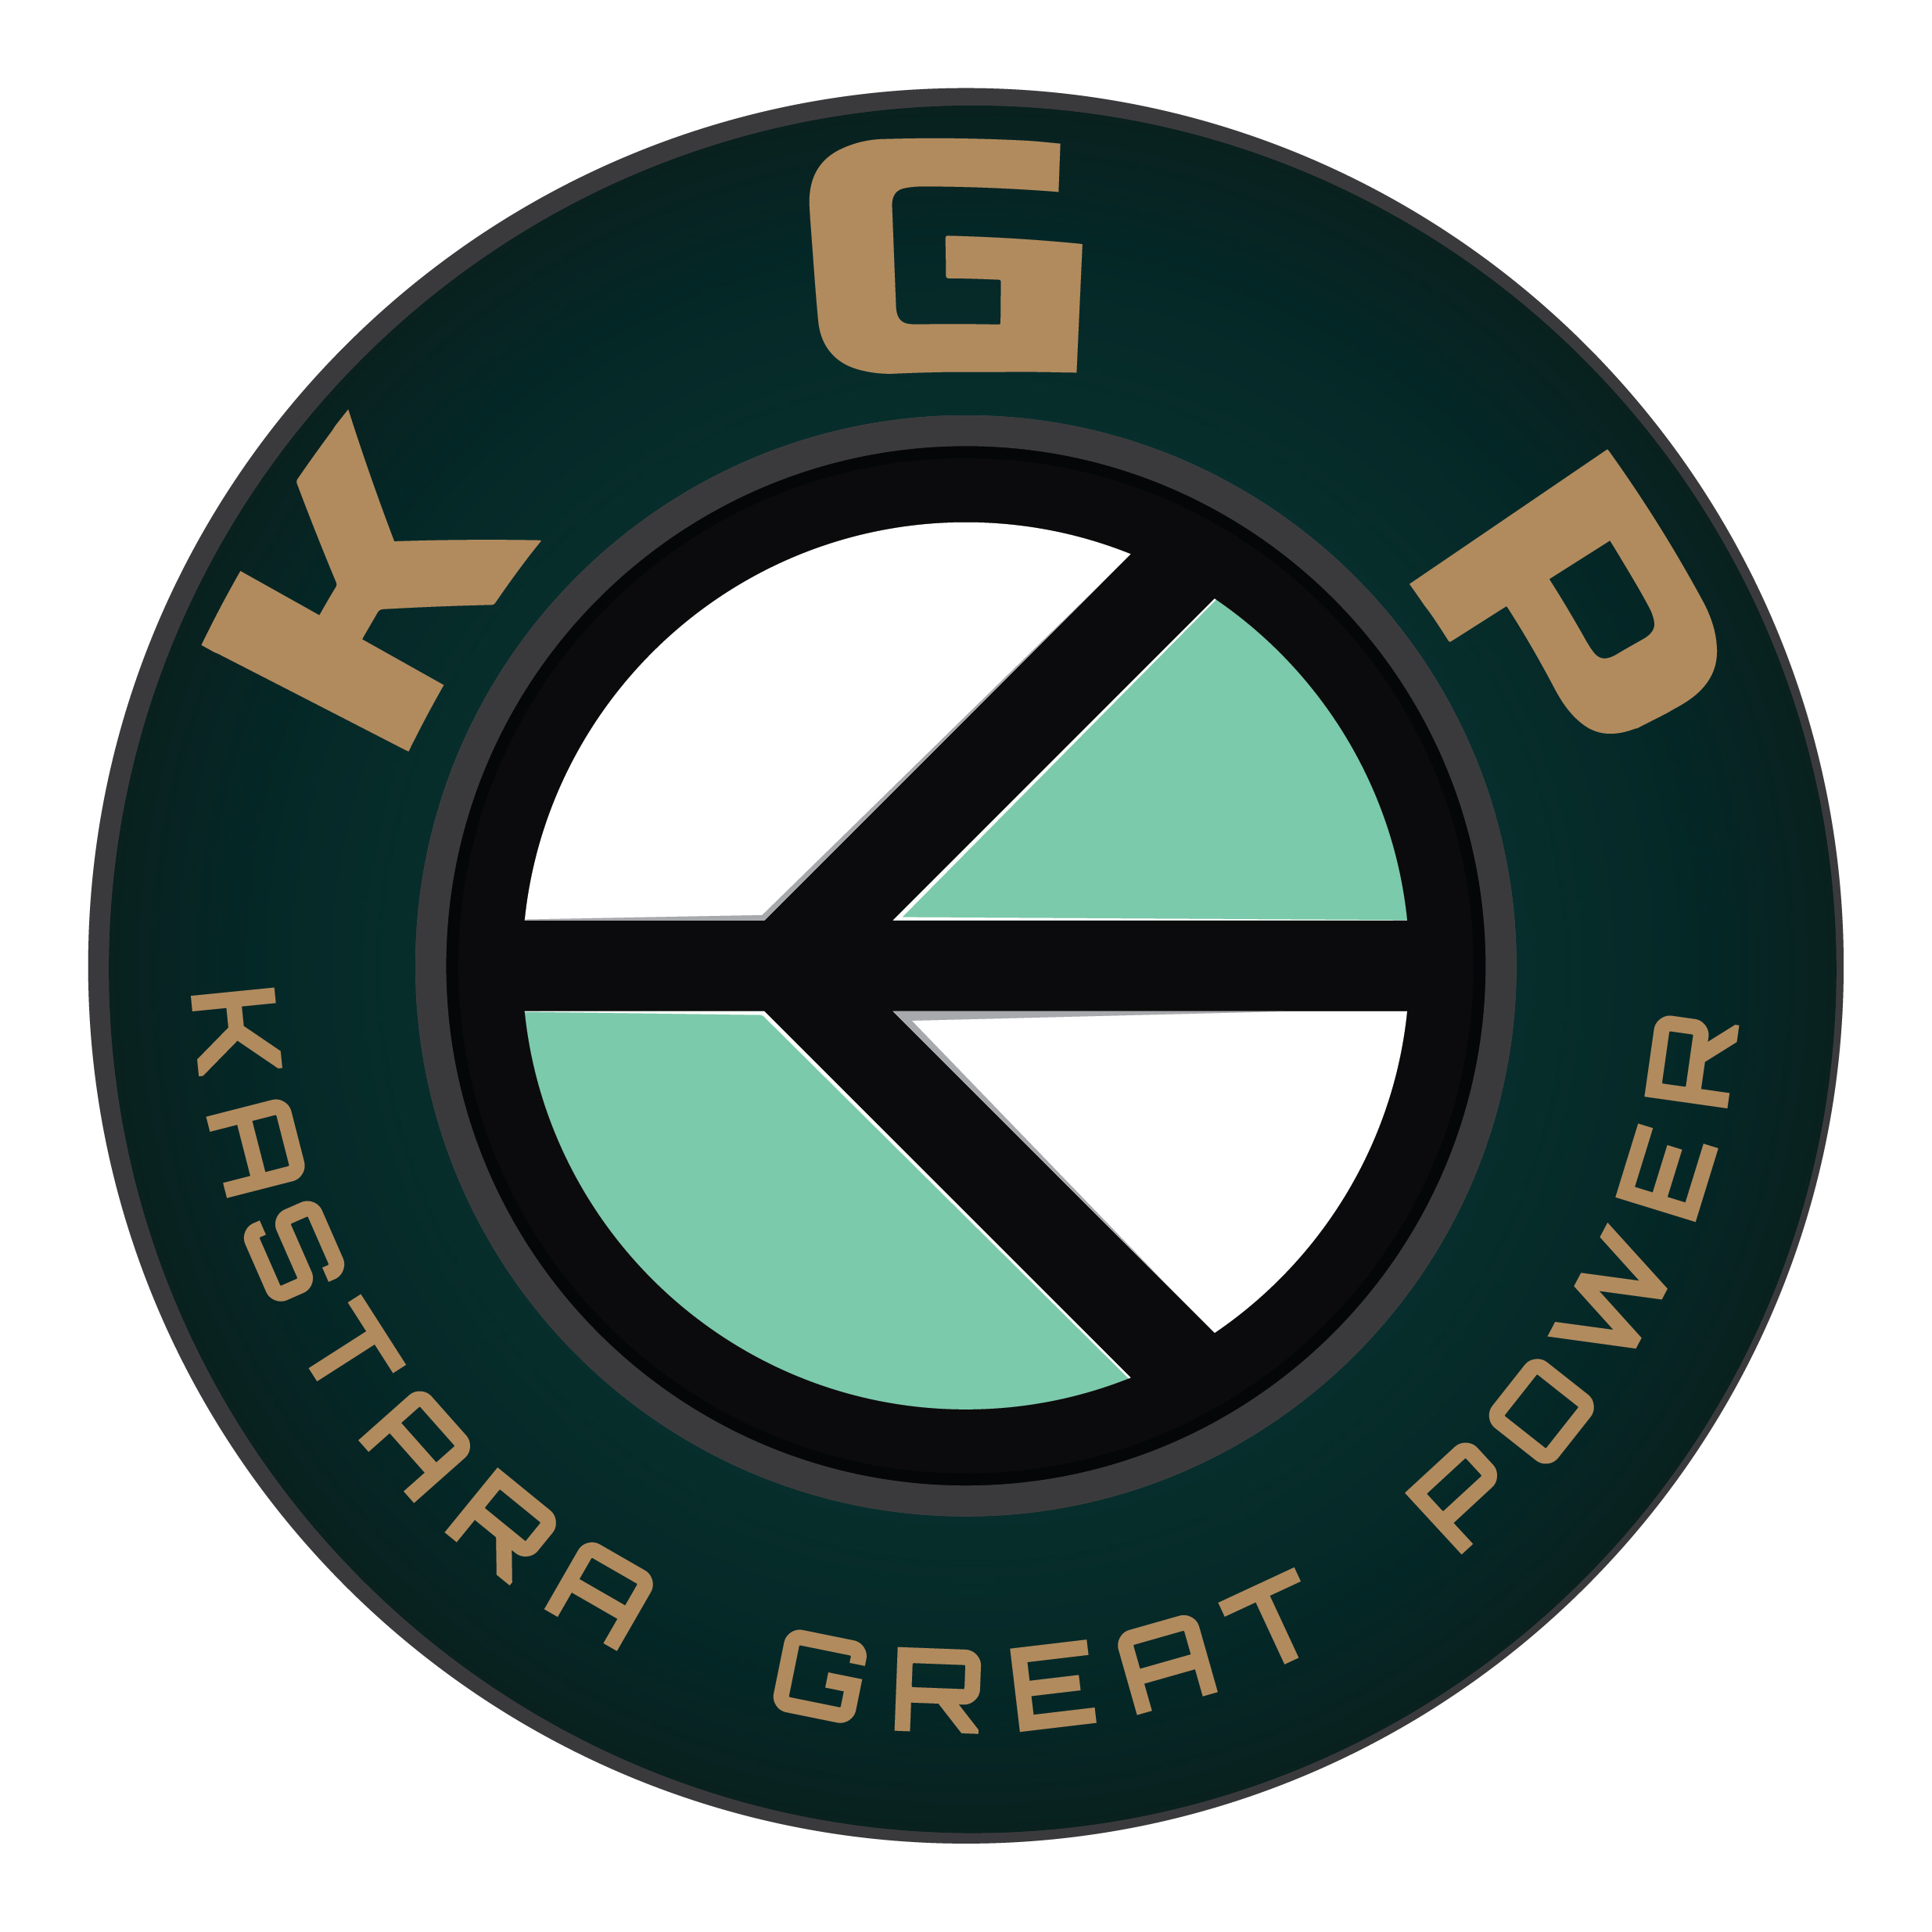 Basic logo_Full Name - KGP (KASTARA GREAT POWER)-01